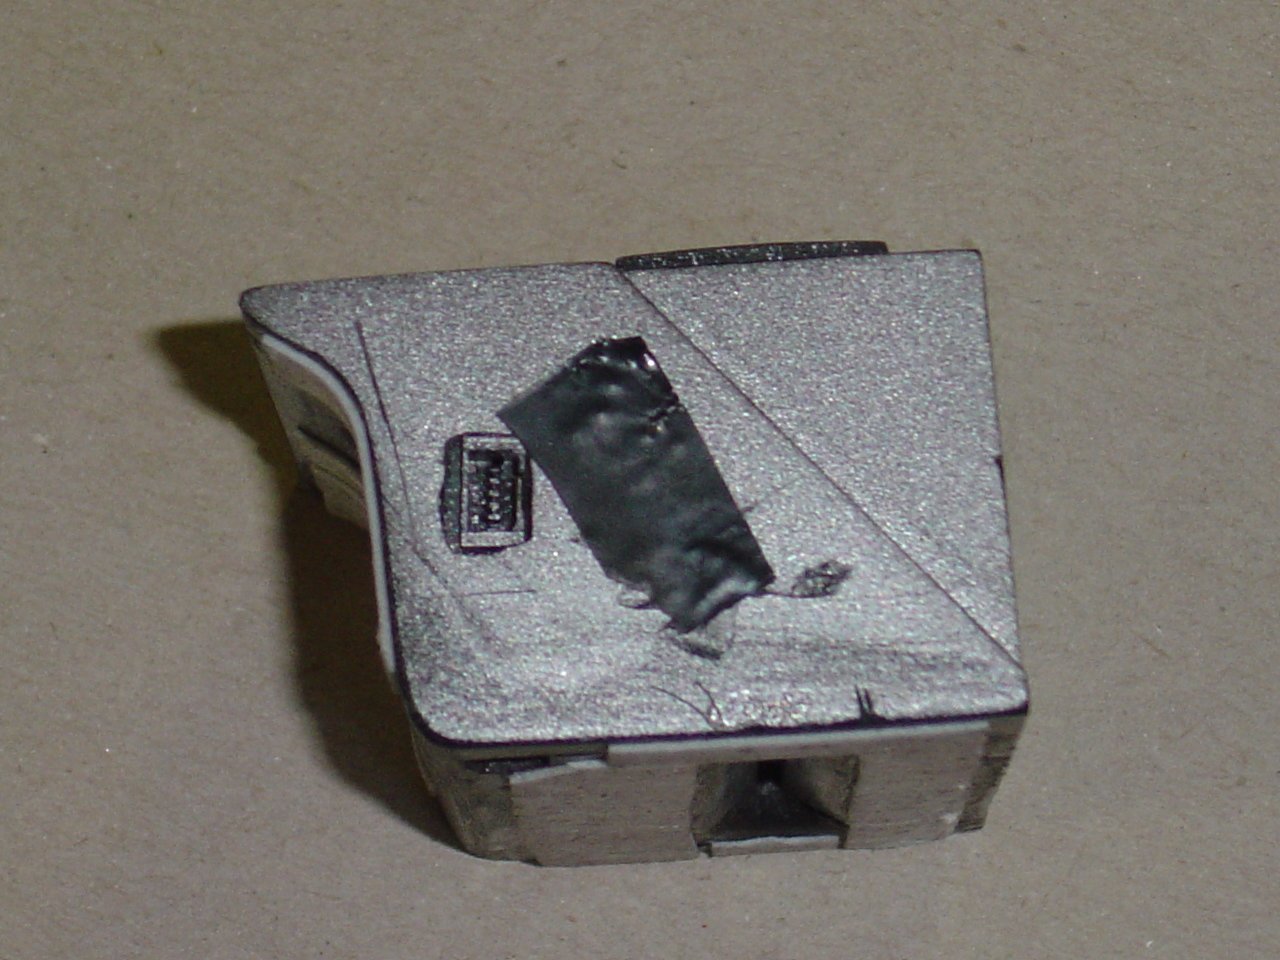 Left side of card-reader showing socket.